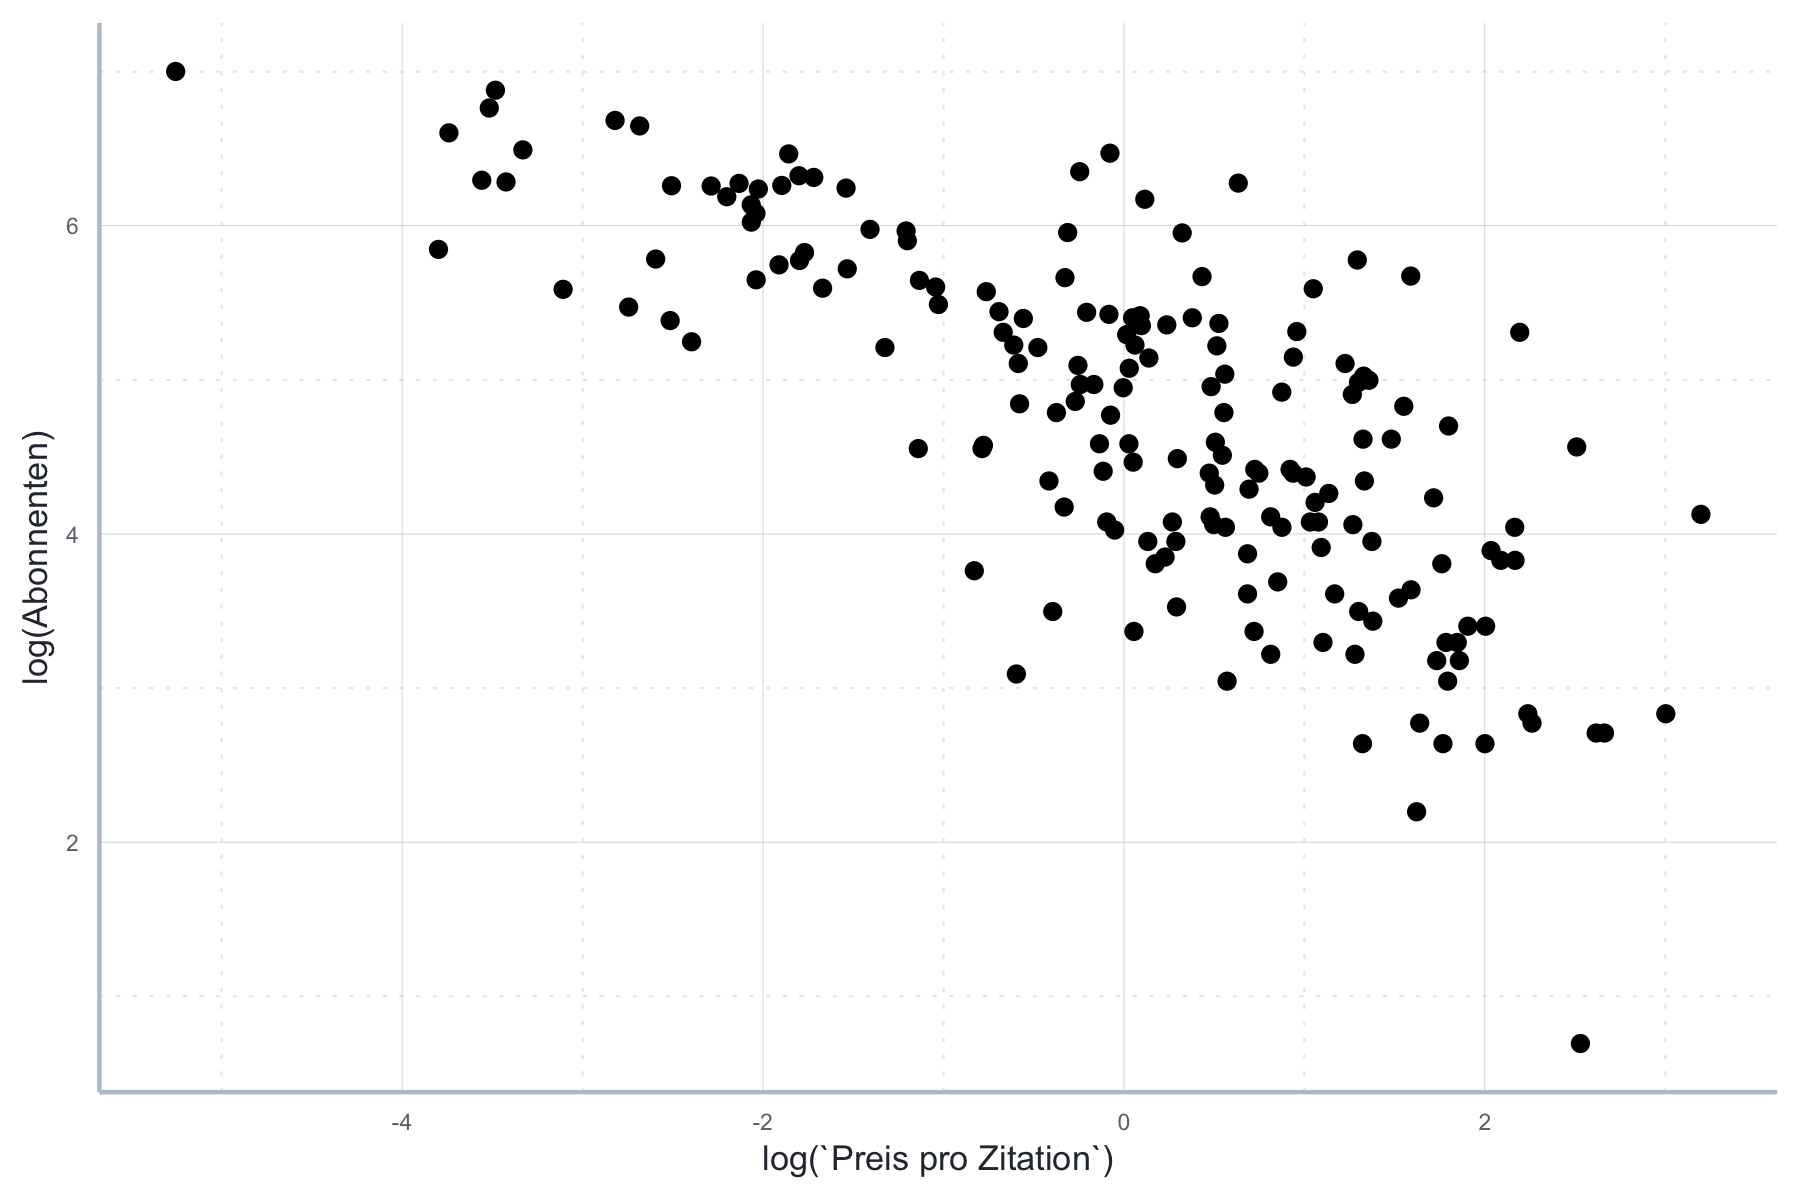 Logarithmierter Zusammenhang zwischen Abonnenten und Preis pro Zitation.